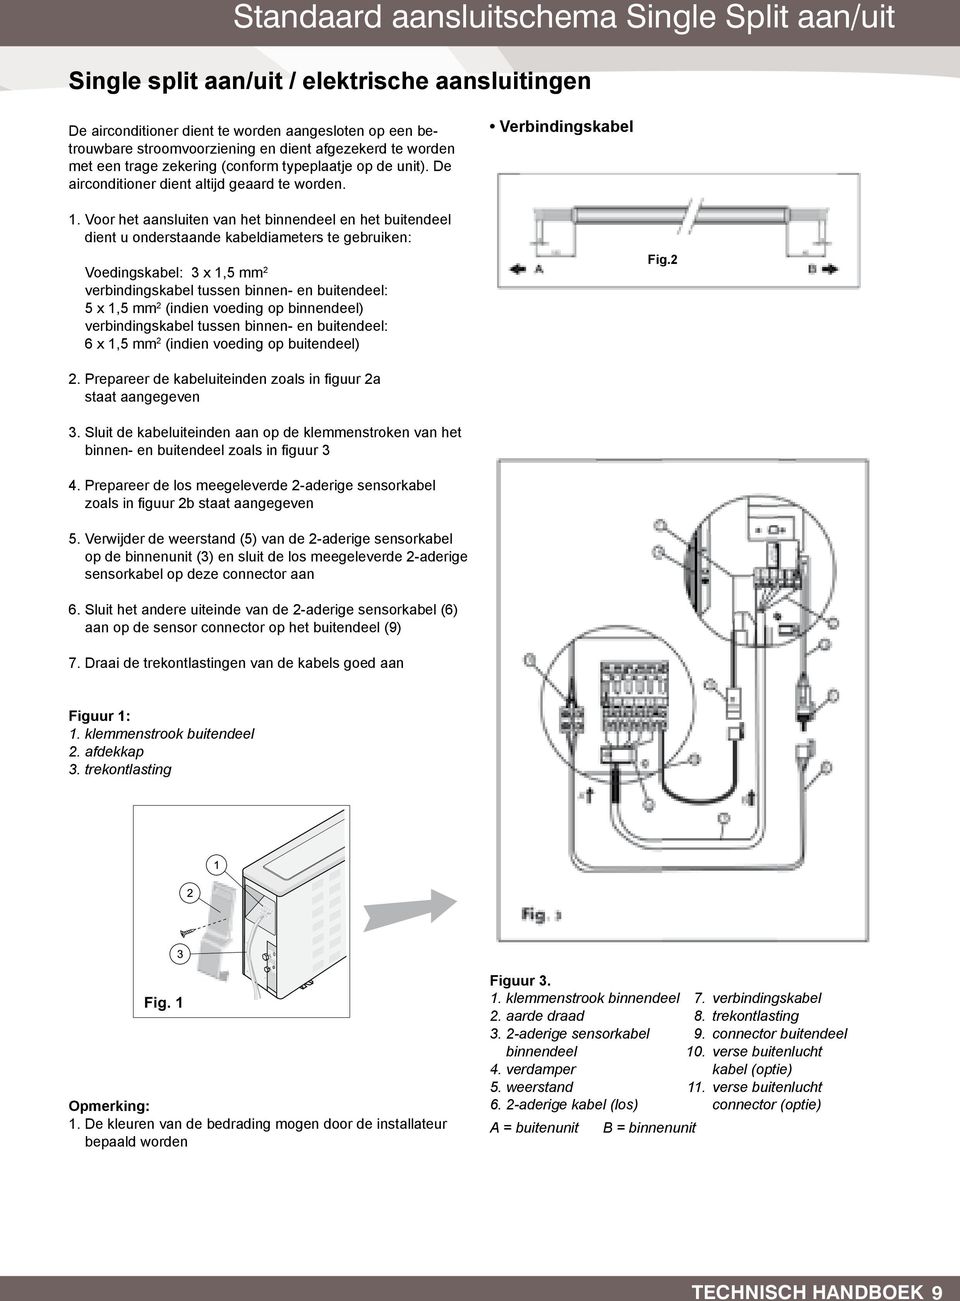 worden typeplaatje aangesloten op de unit). De Voedingskabel airconditioner op een betrouwbare dient altijd geaard stroomvoorziening te worden. en dient afgezekerd te worden met een trage zekering 1.